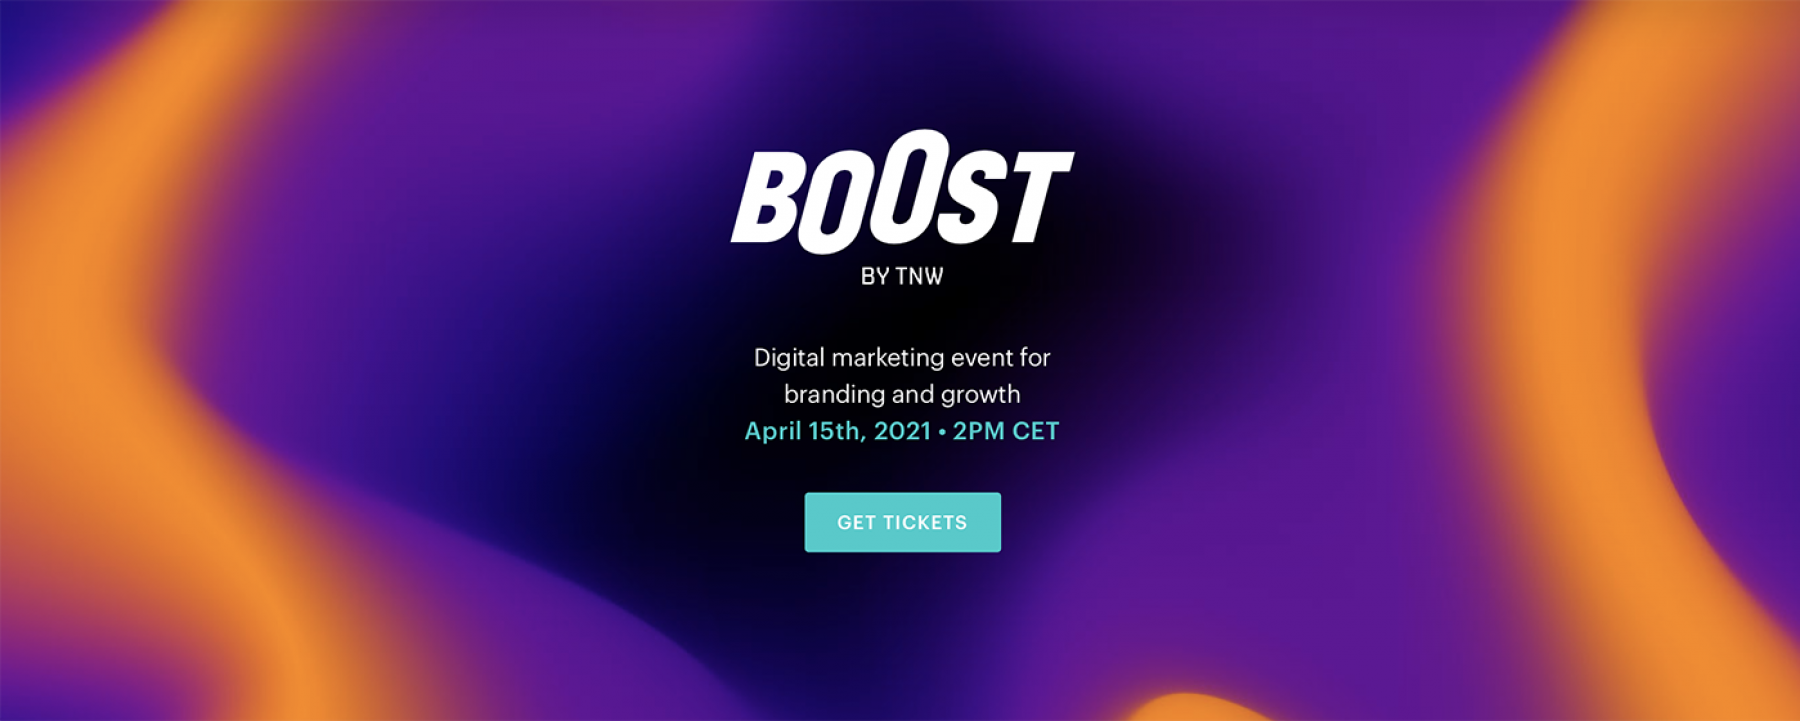 Boost by TNW, un événement en ligne organisé le 15 avril 2021